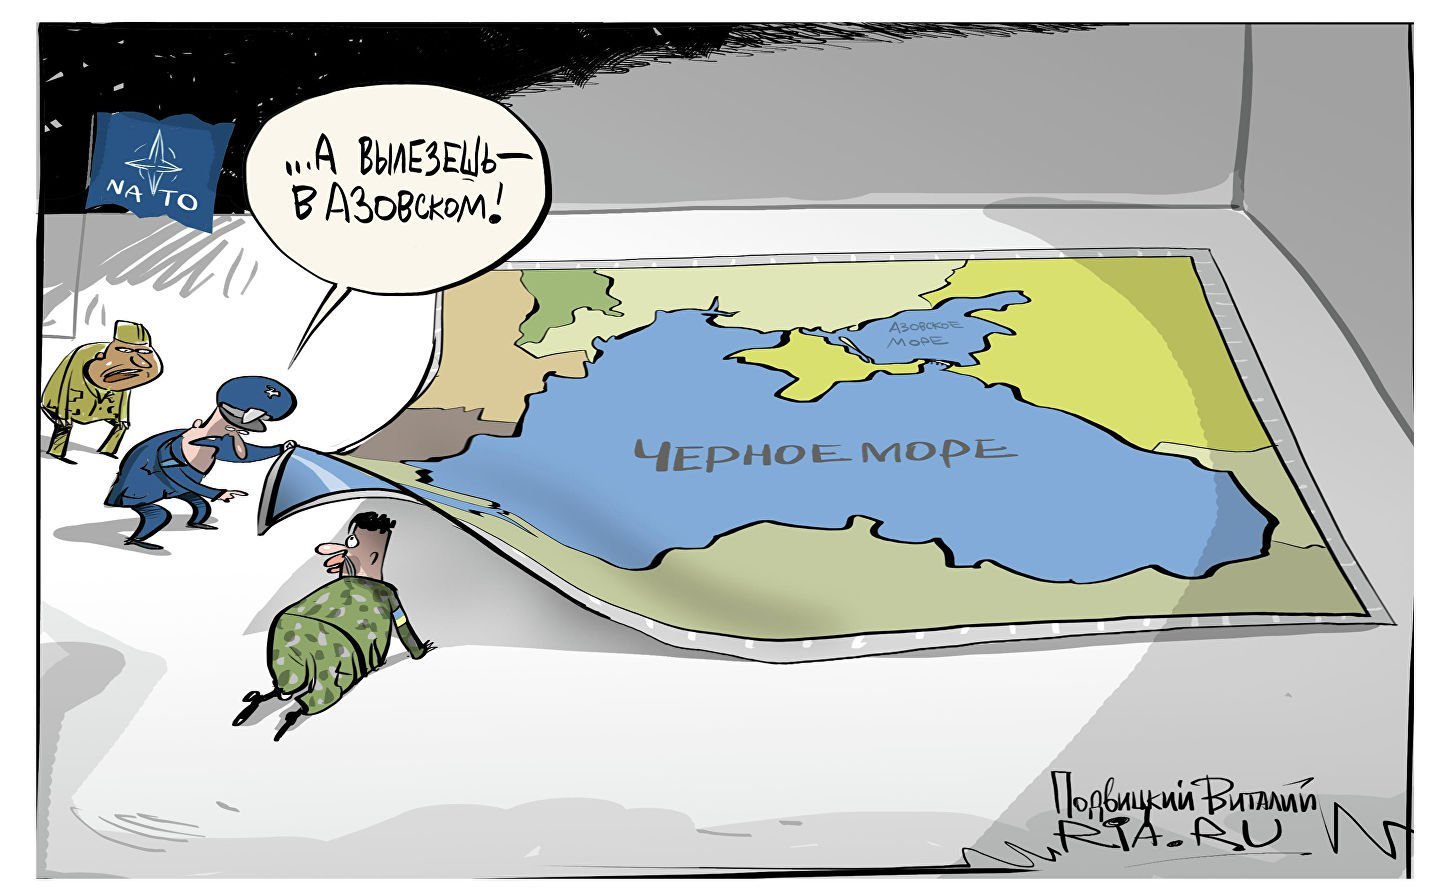 НАТО черное море карикатура